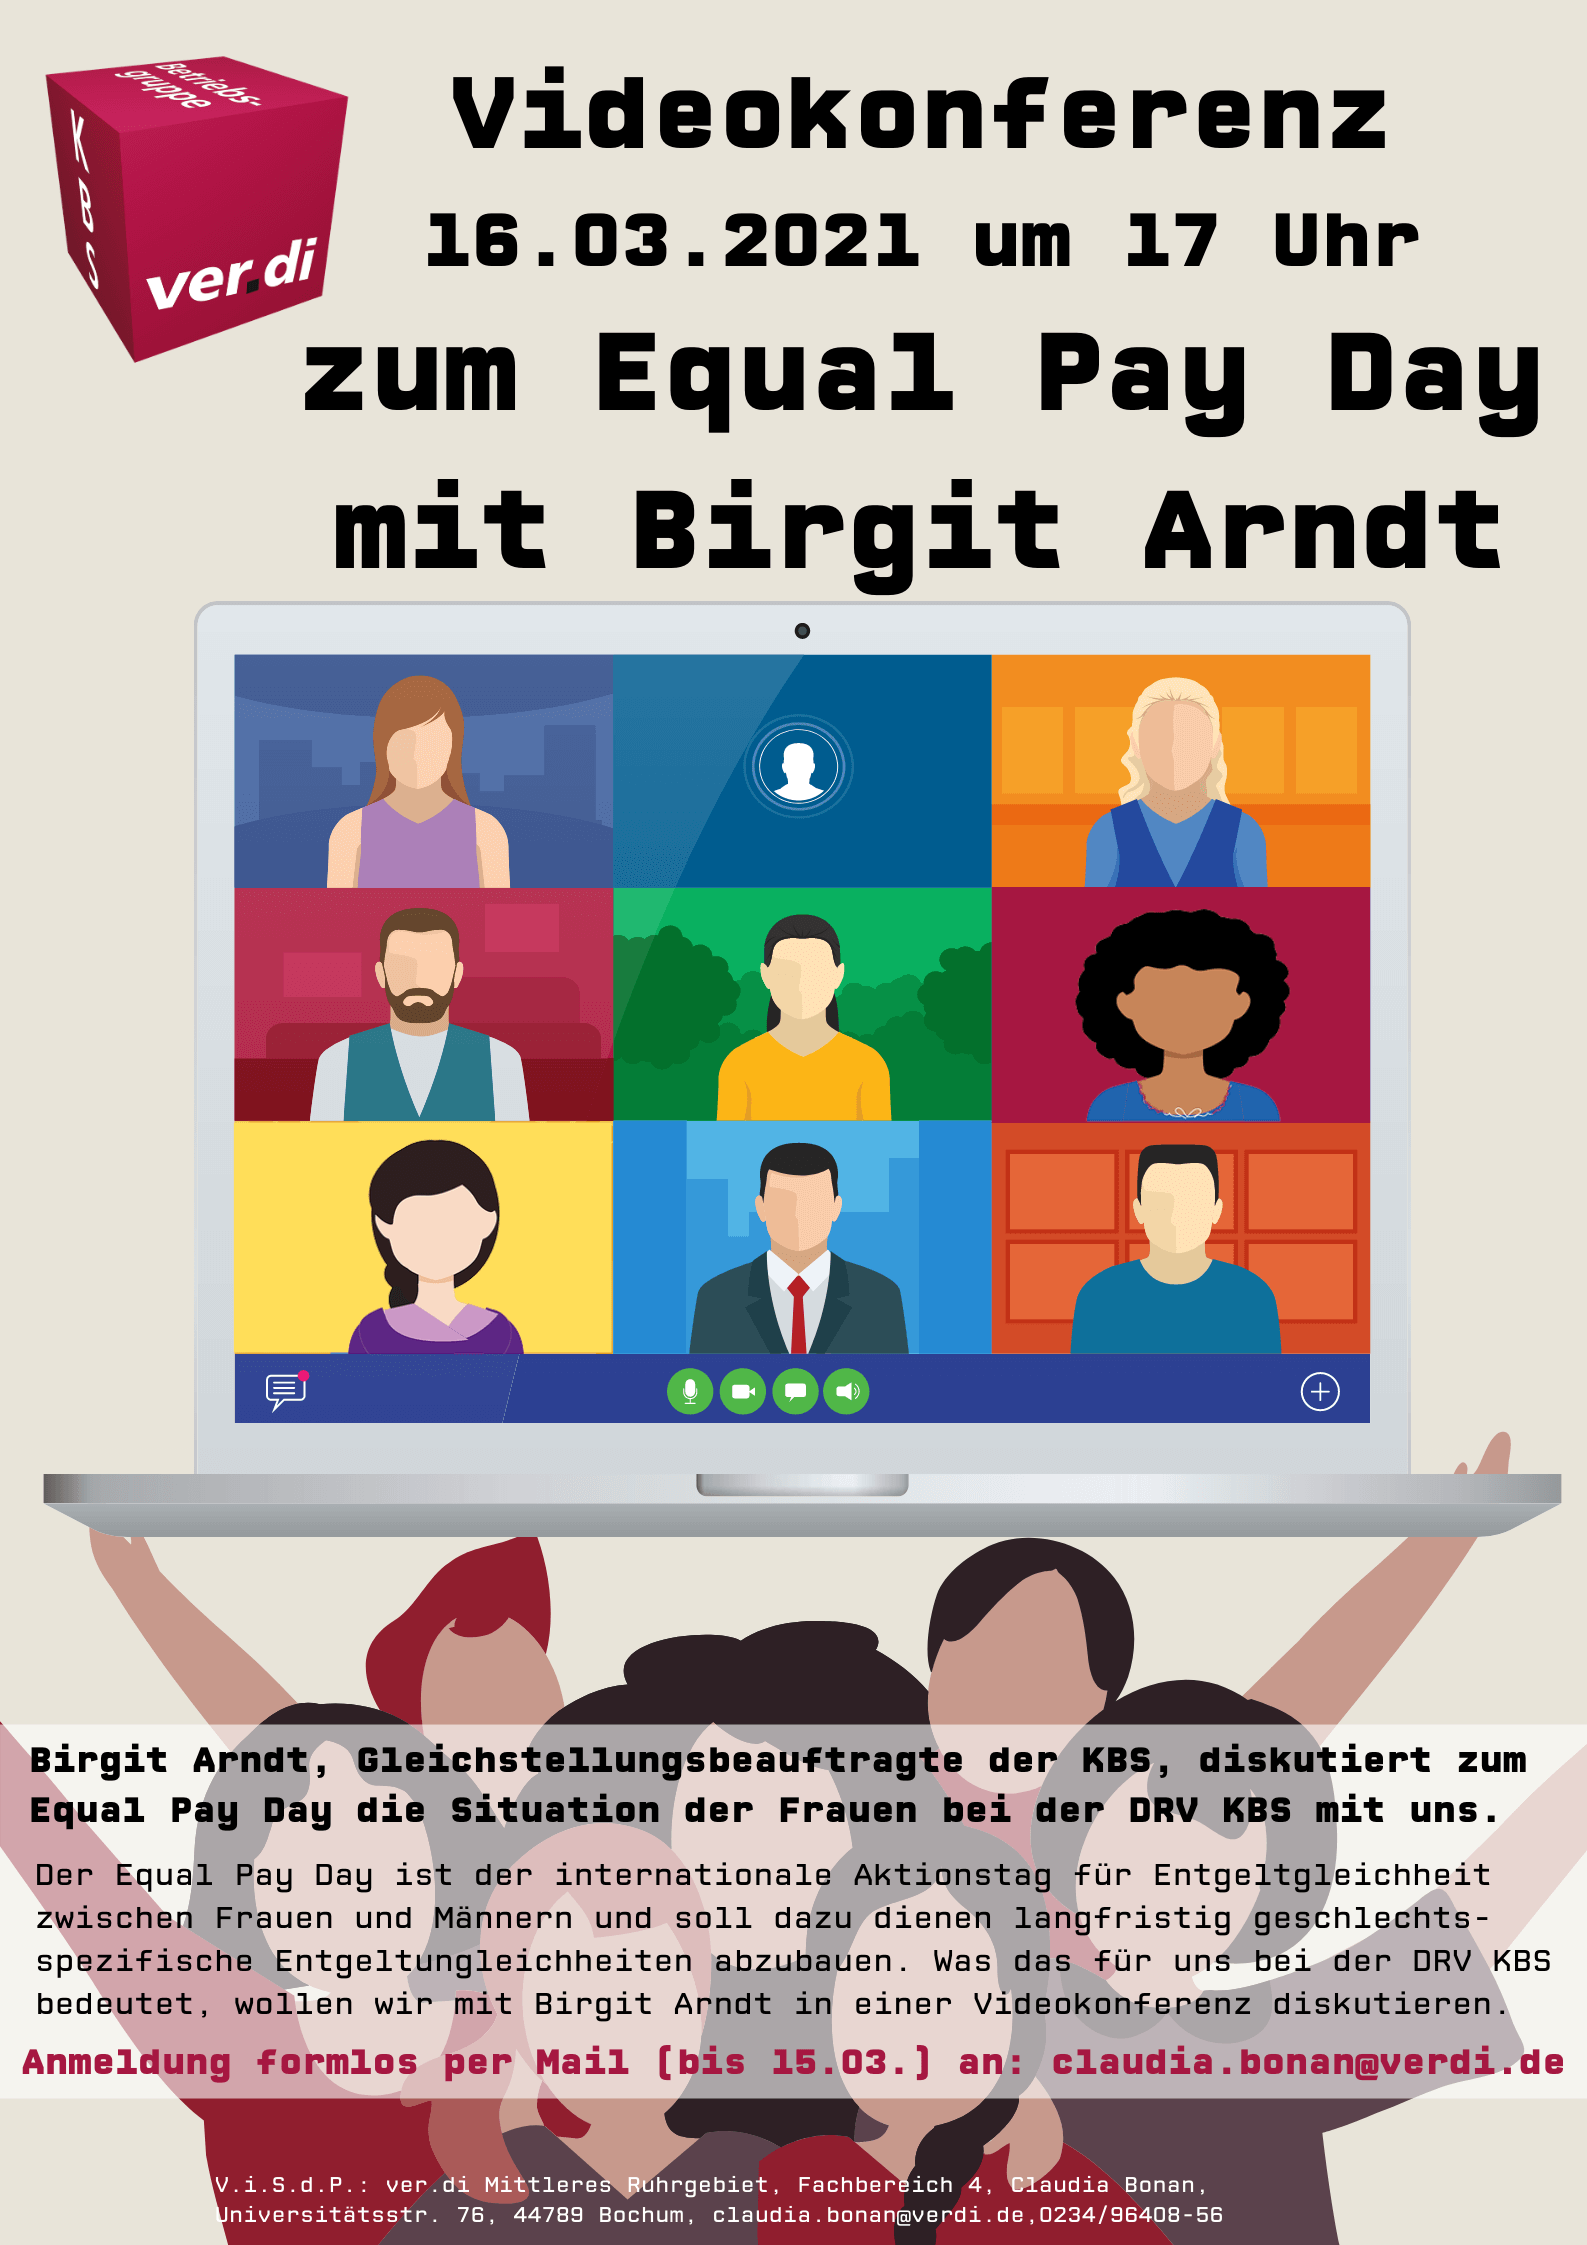 Videokonferenz am 16.03.2021 zum Equal Pay Day mit Birgit Arndt